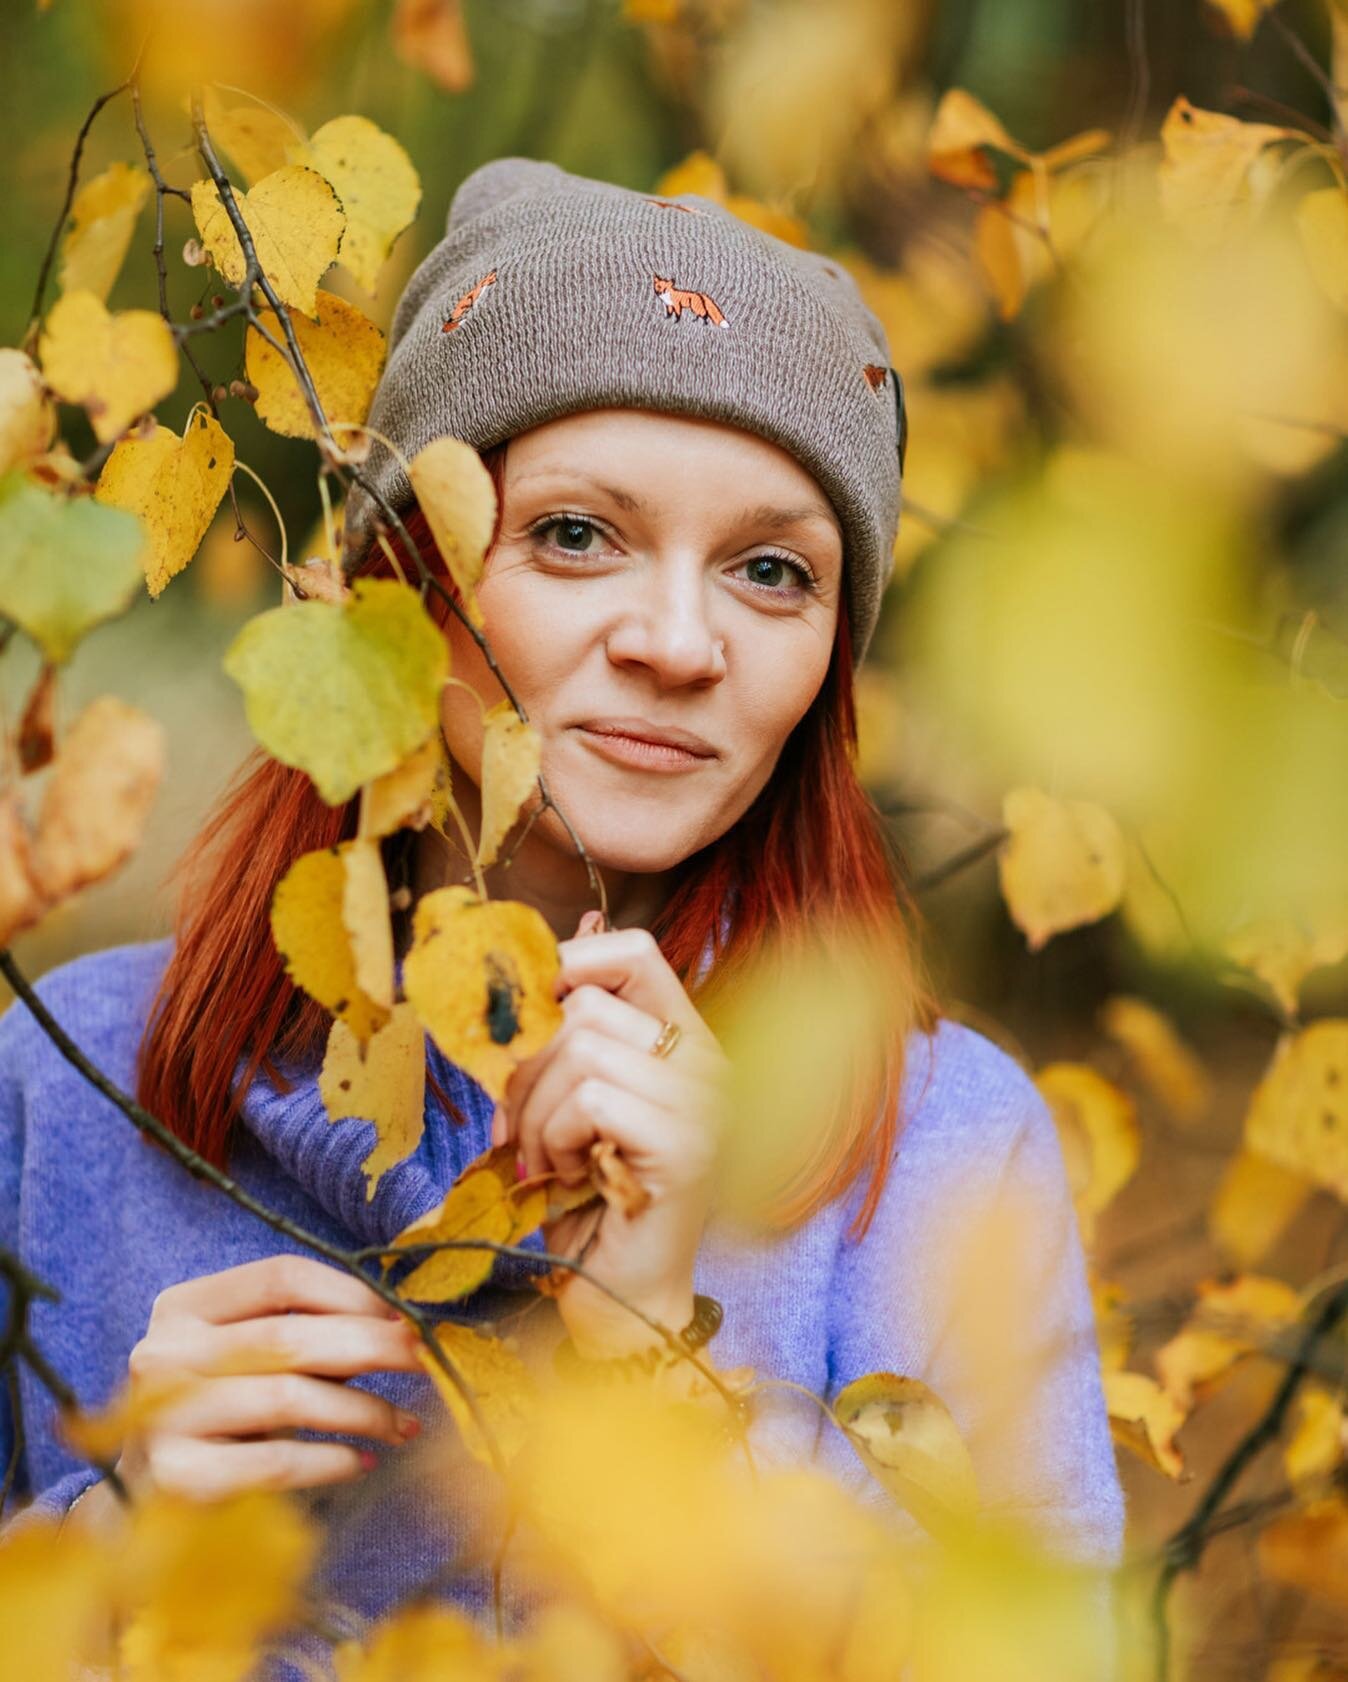 Spotkanie po latach z Magdą 💛🧡❤️ W końcu mogłam zrobić zdjęcia w prawdziwą, polską, złotą jesień. To był świetny dzień! Dzięki za wszystko Magda 🤗

P.s. Sesja wykonana jeszcze w październiku 😁
.
.
.
#jesień #jesieniara #liście #portret #kobieta #